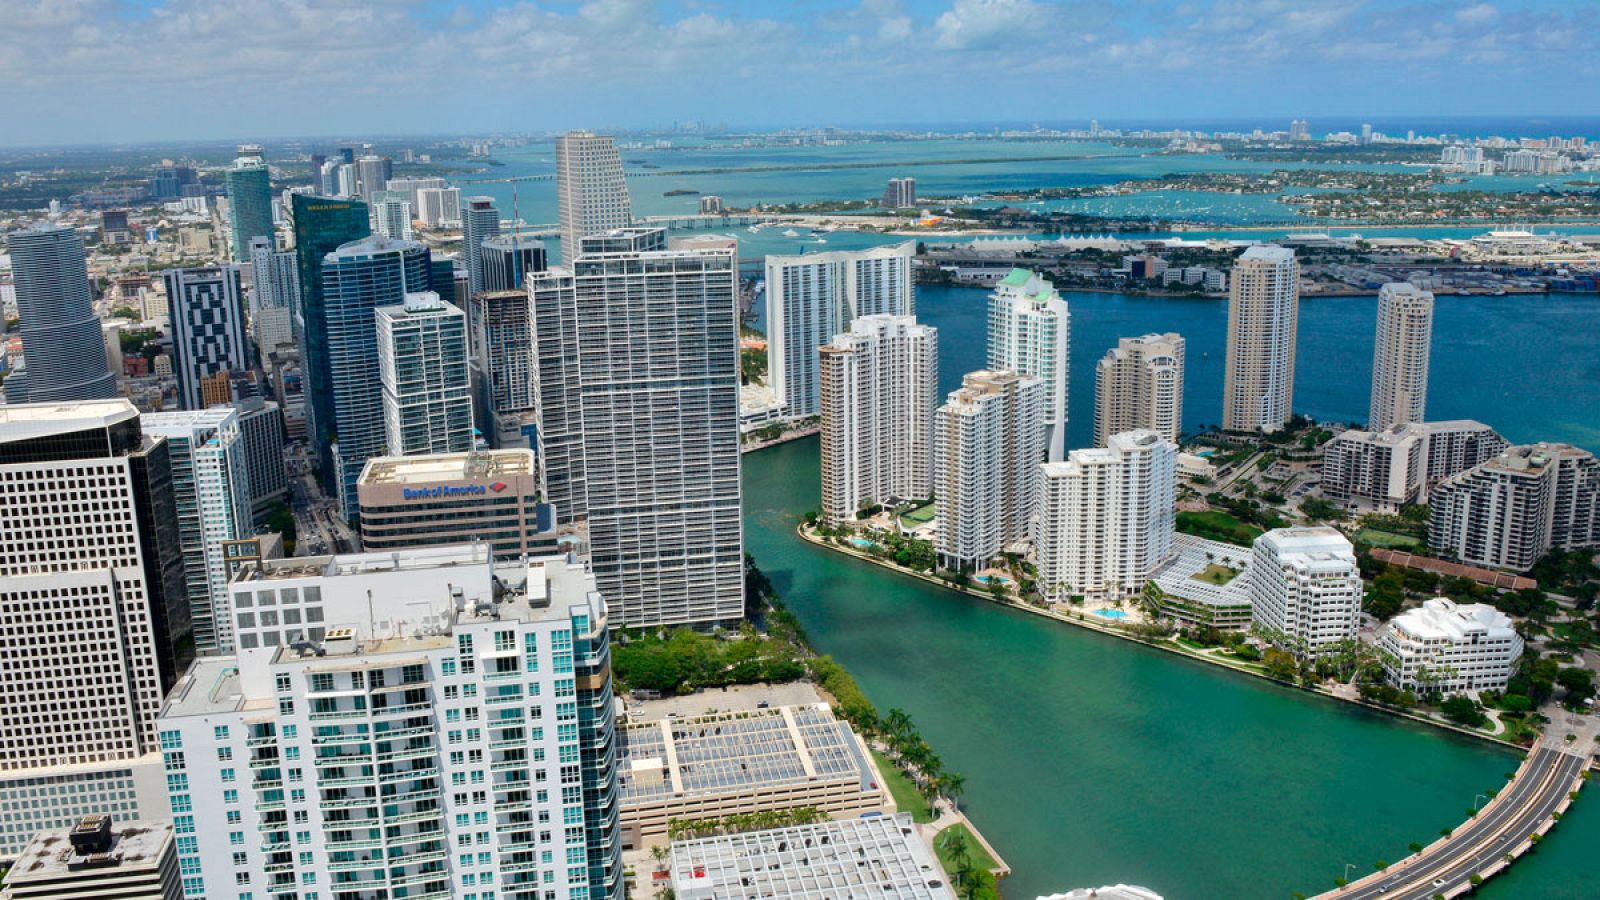 Vista del downtown (centro) de la ciudad de Miami tomada desde el edificio Panorama Tower